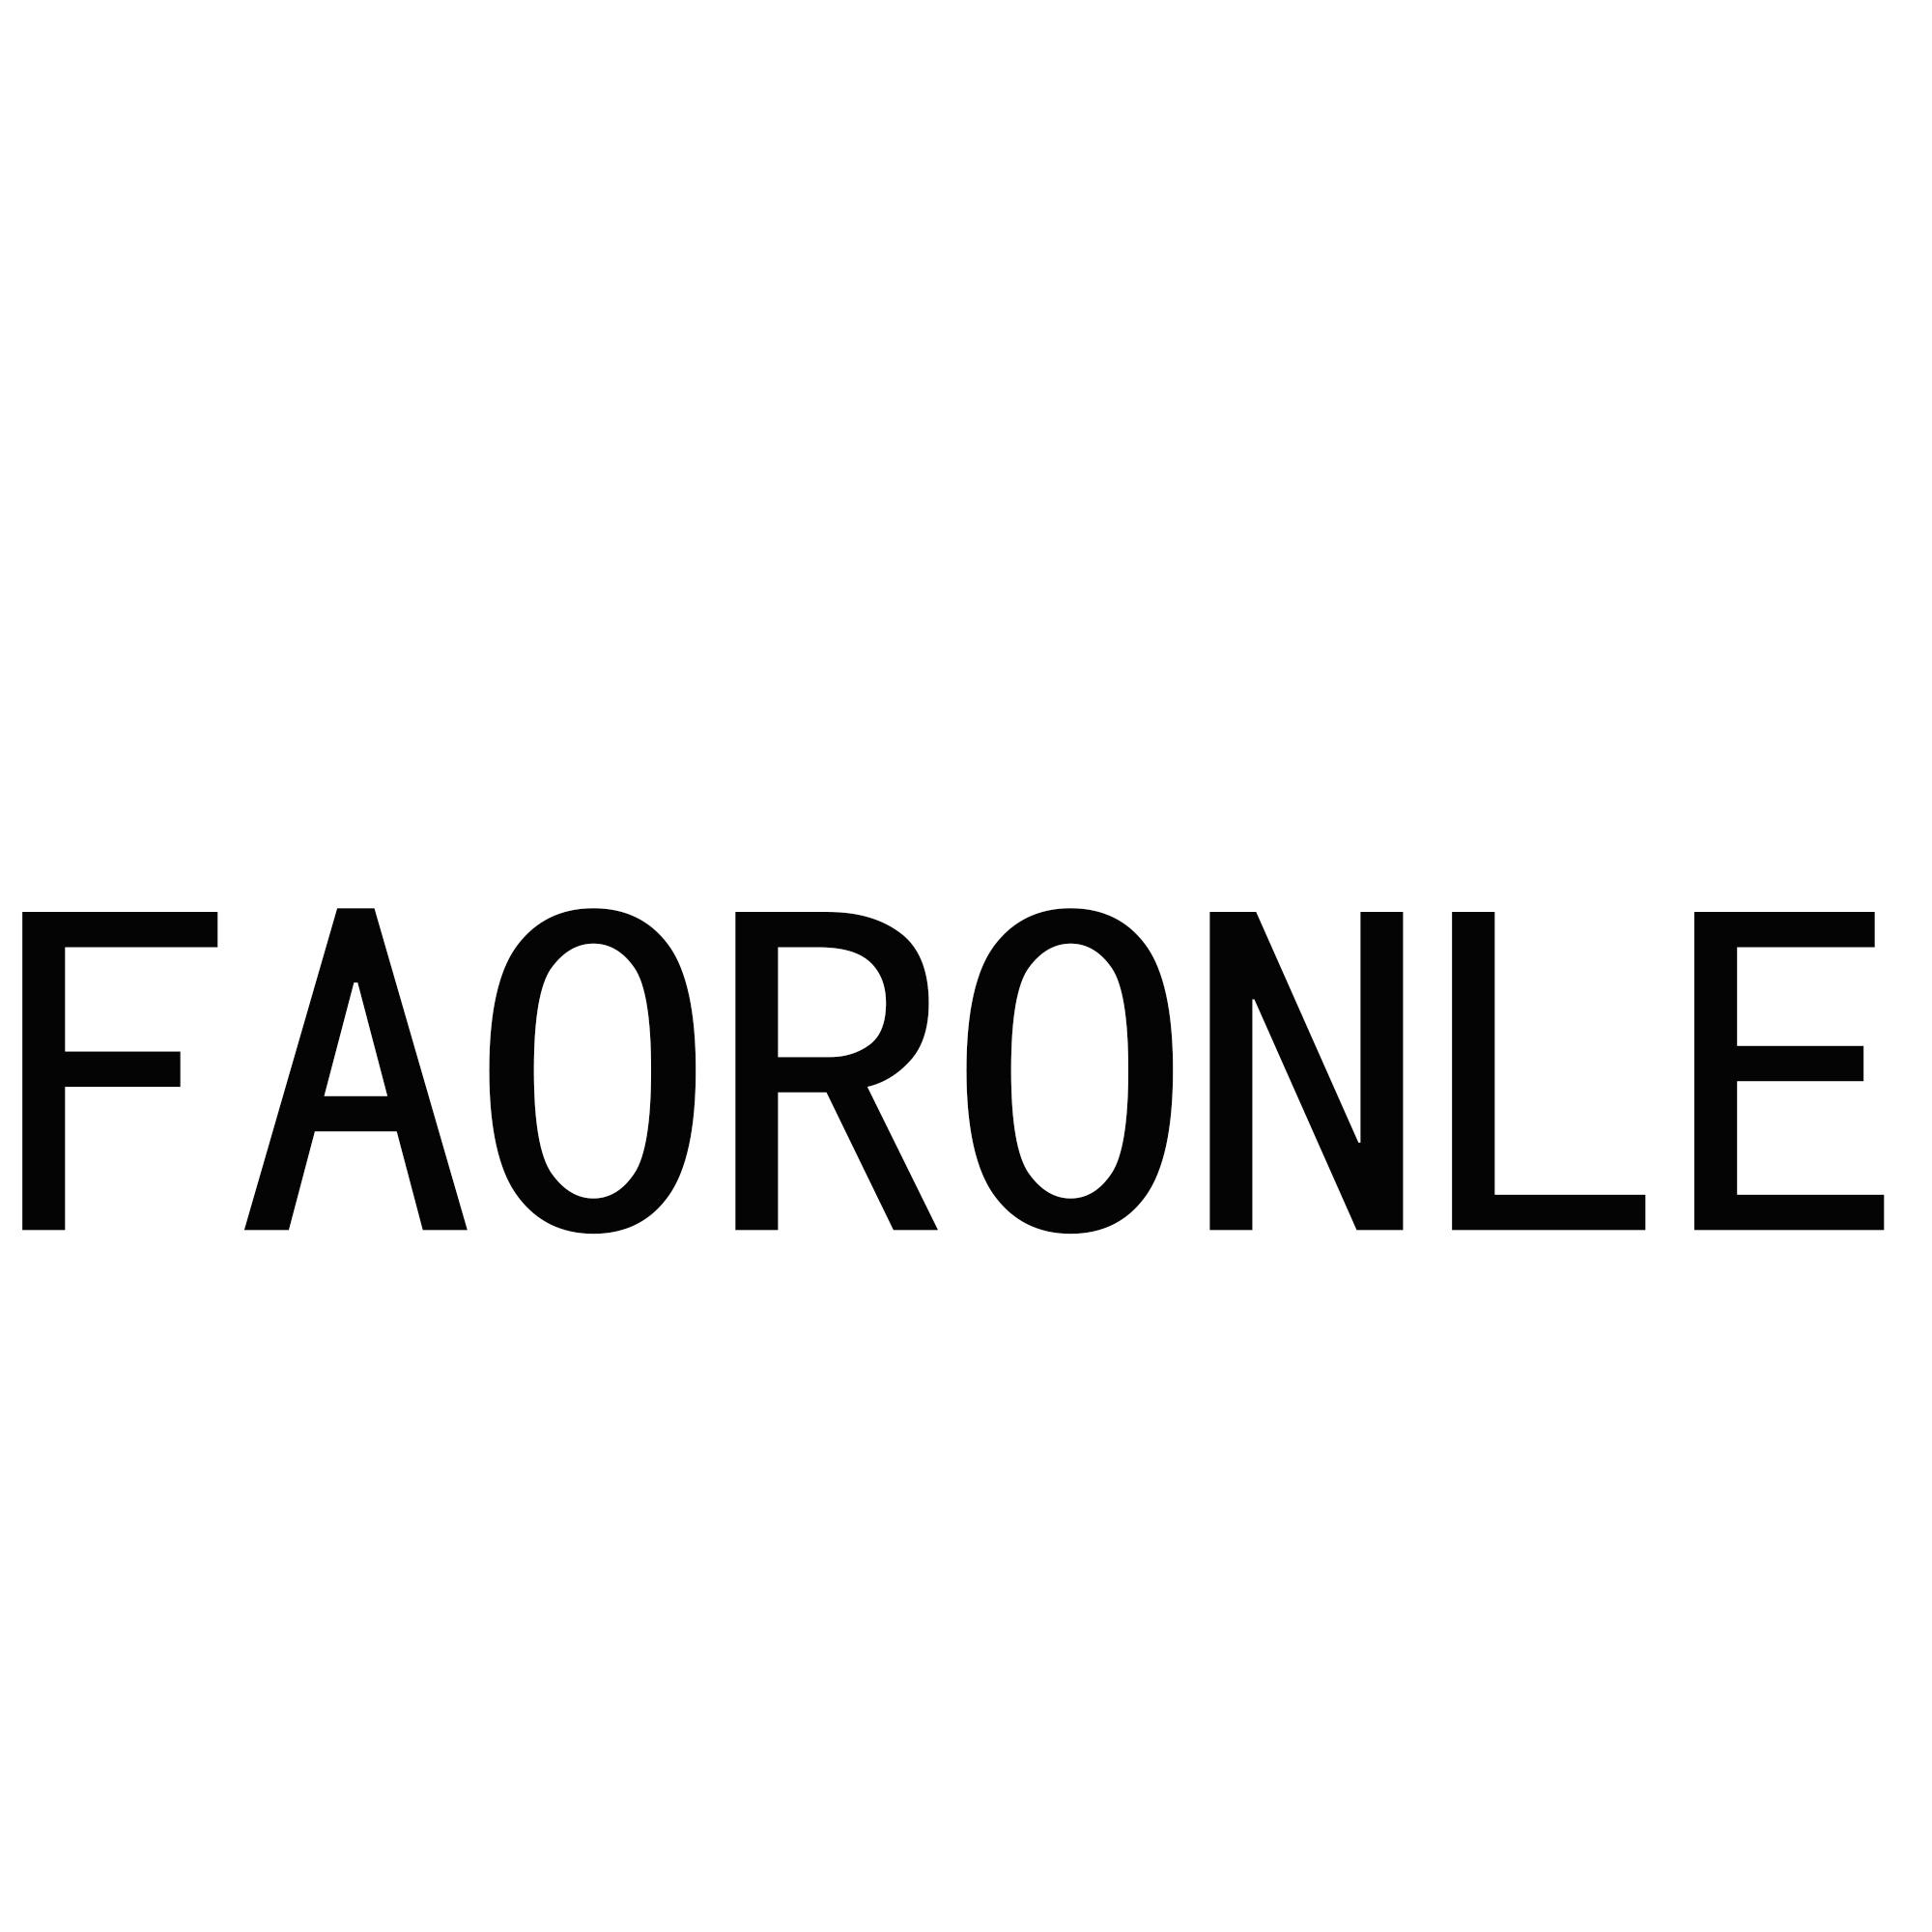 FAORONLE商标转让